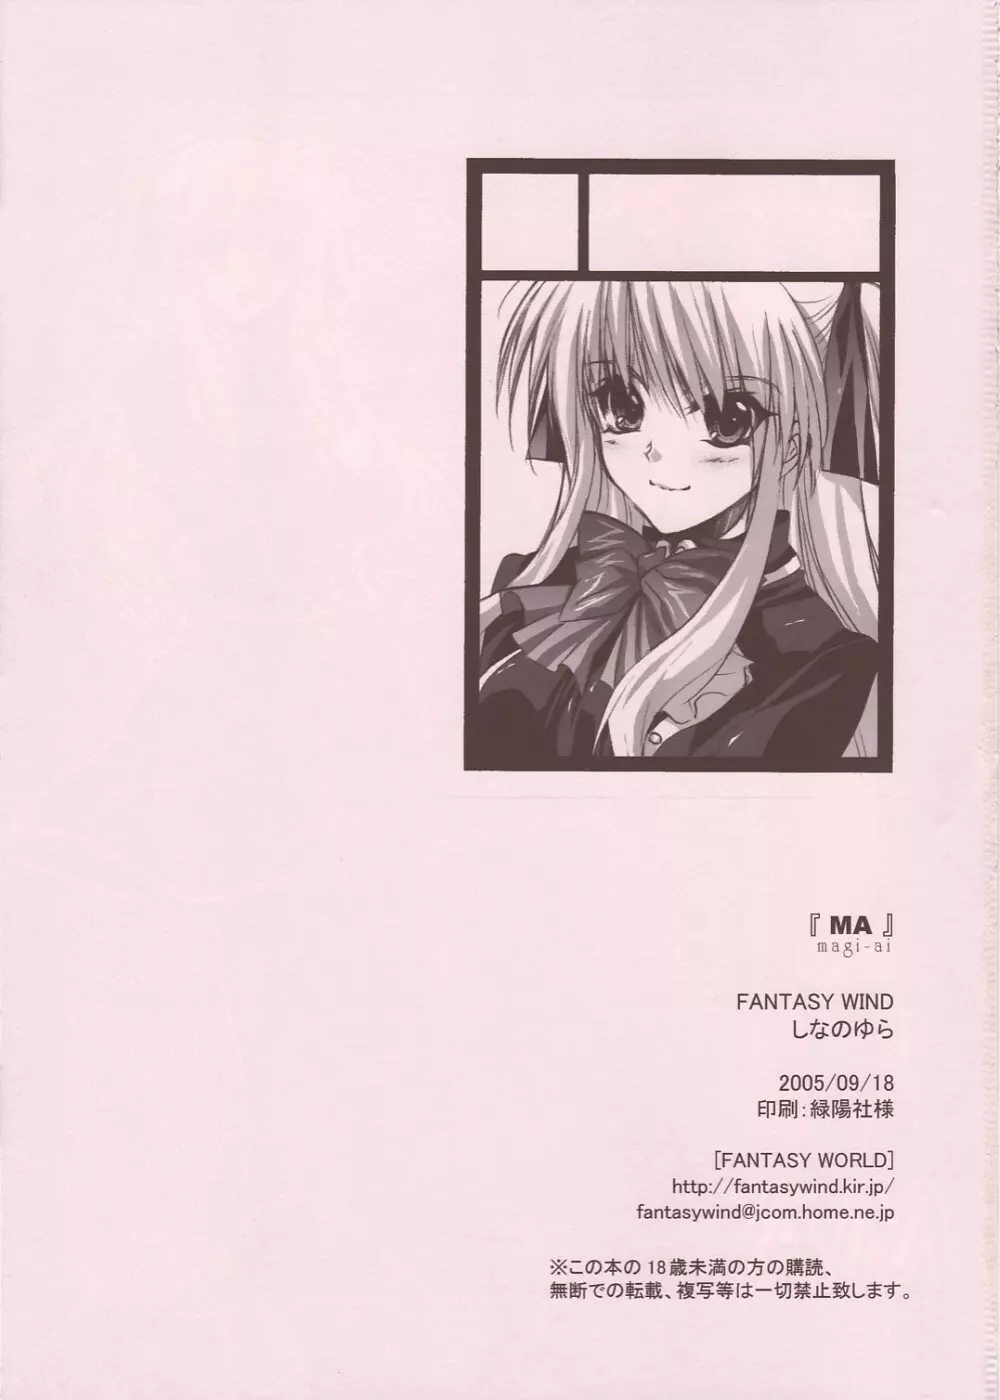 magi-ai 24ページ